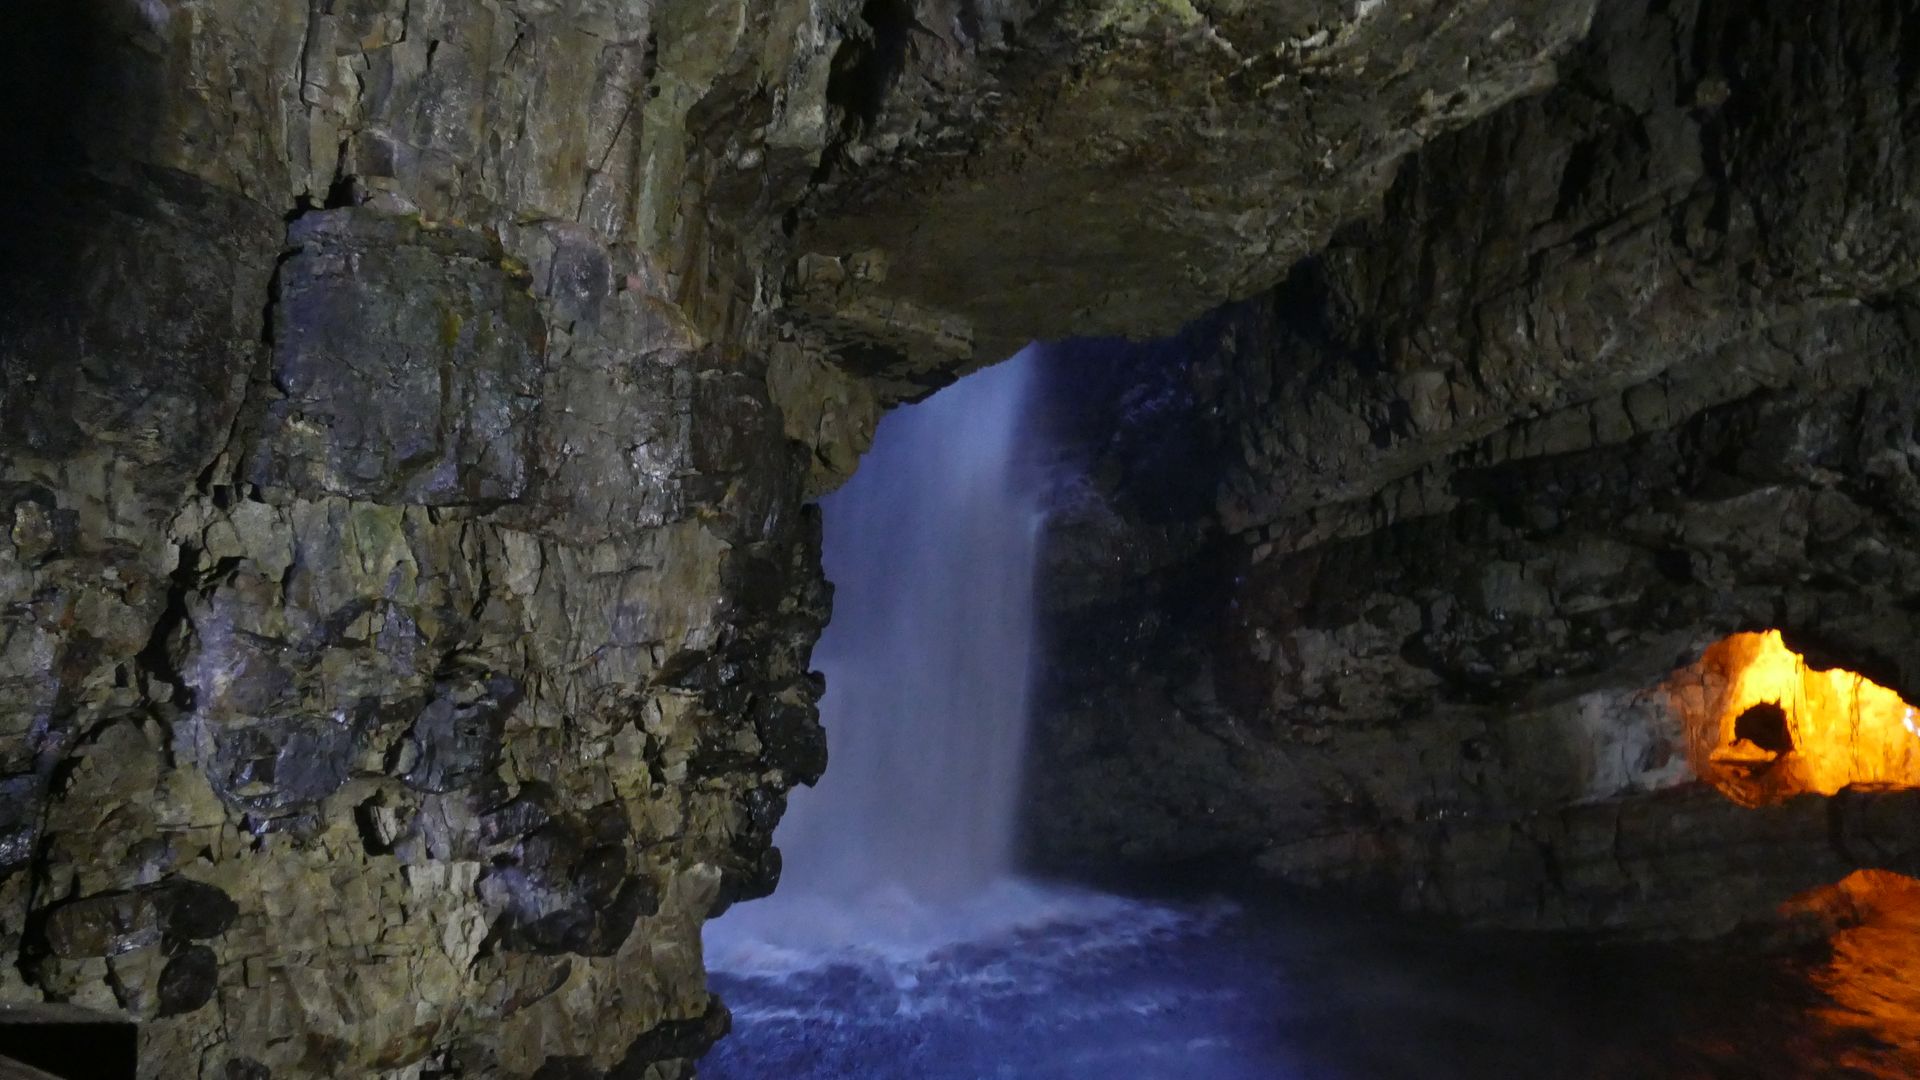 Wasserfall in der Höhle